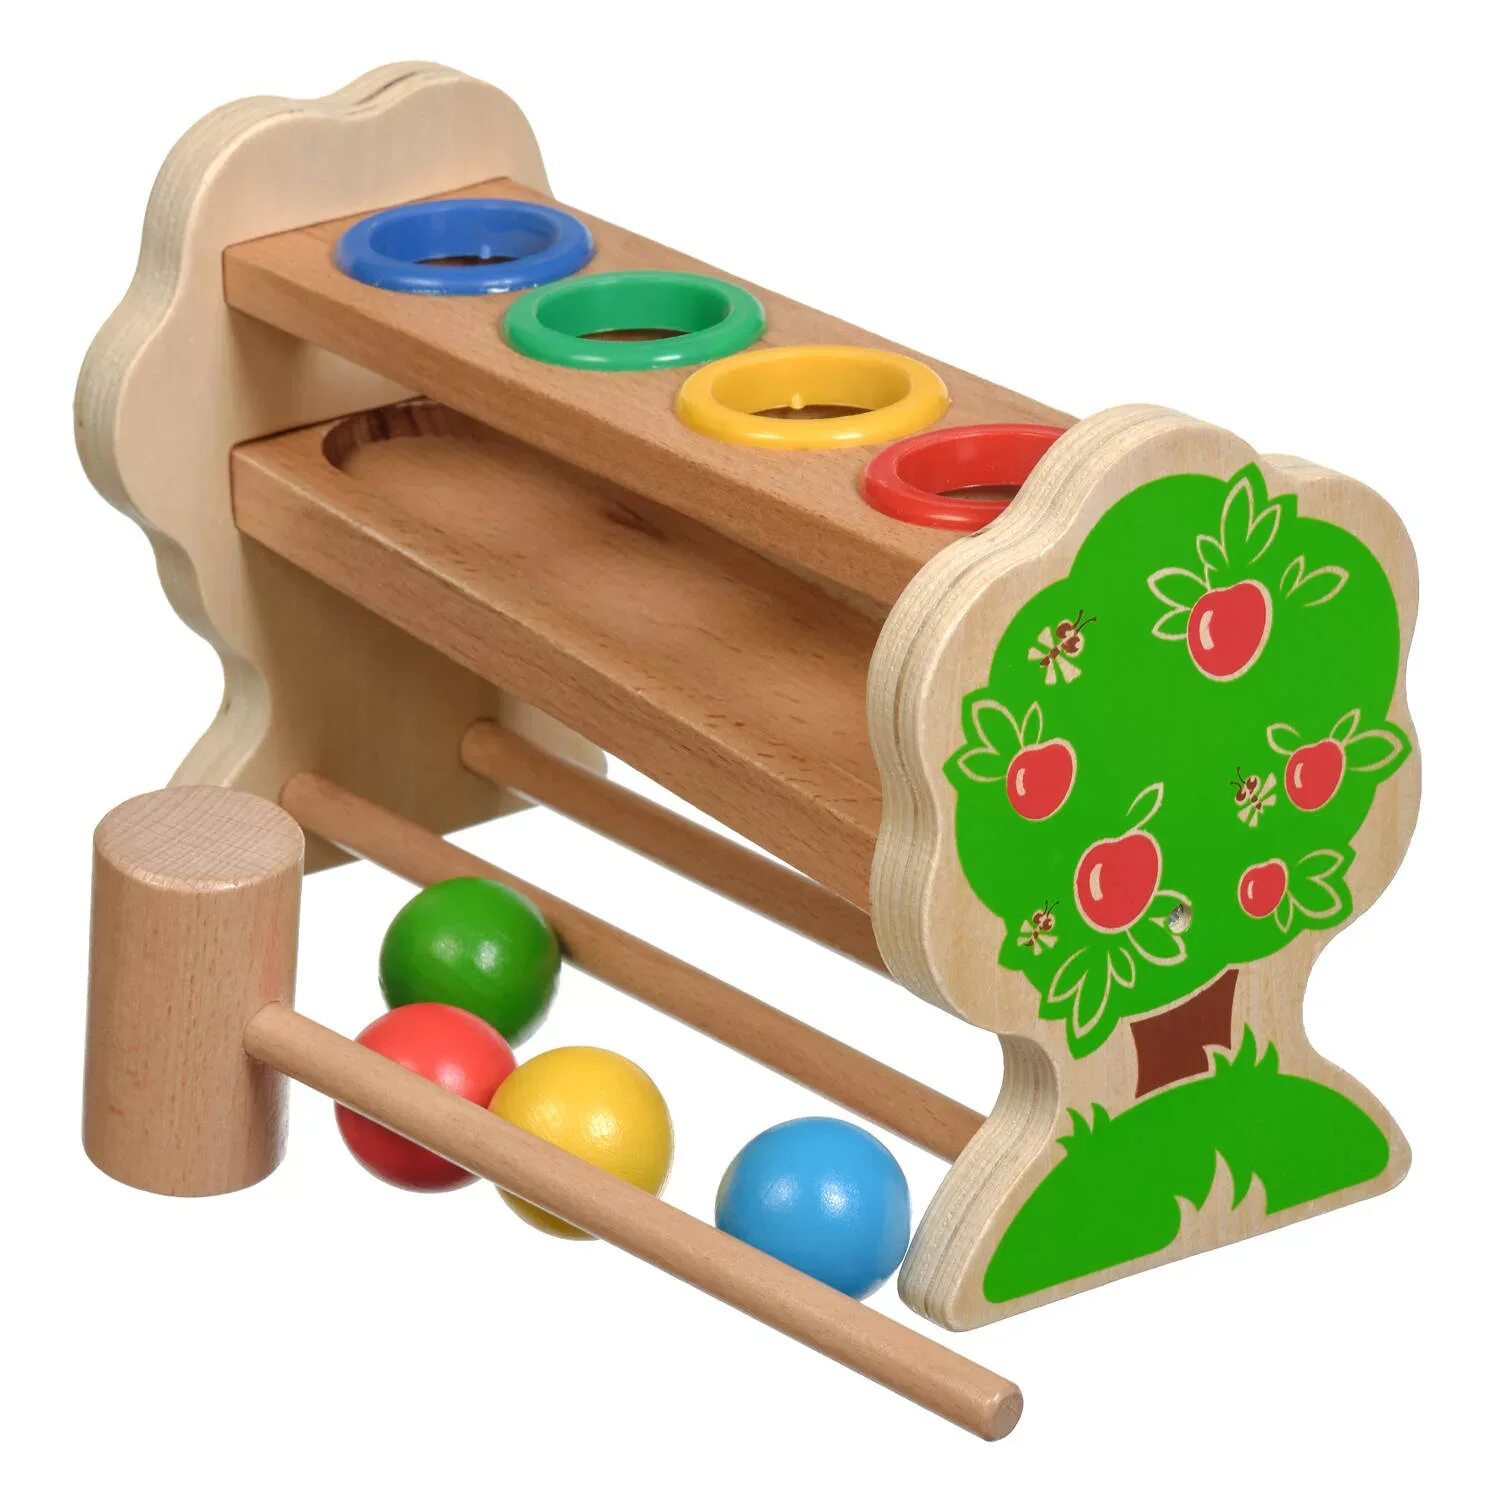 Стучалка "горка-шарики" (д003). МДИ машинка стучалка. Игрушка деревянная развивающая. Развивающие игрушки из дерева.